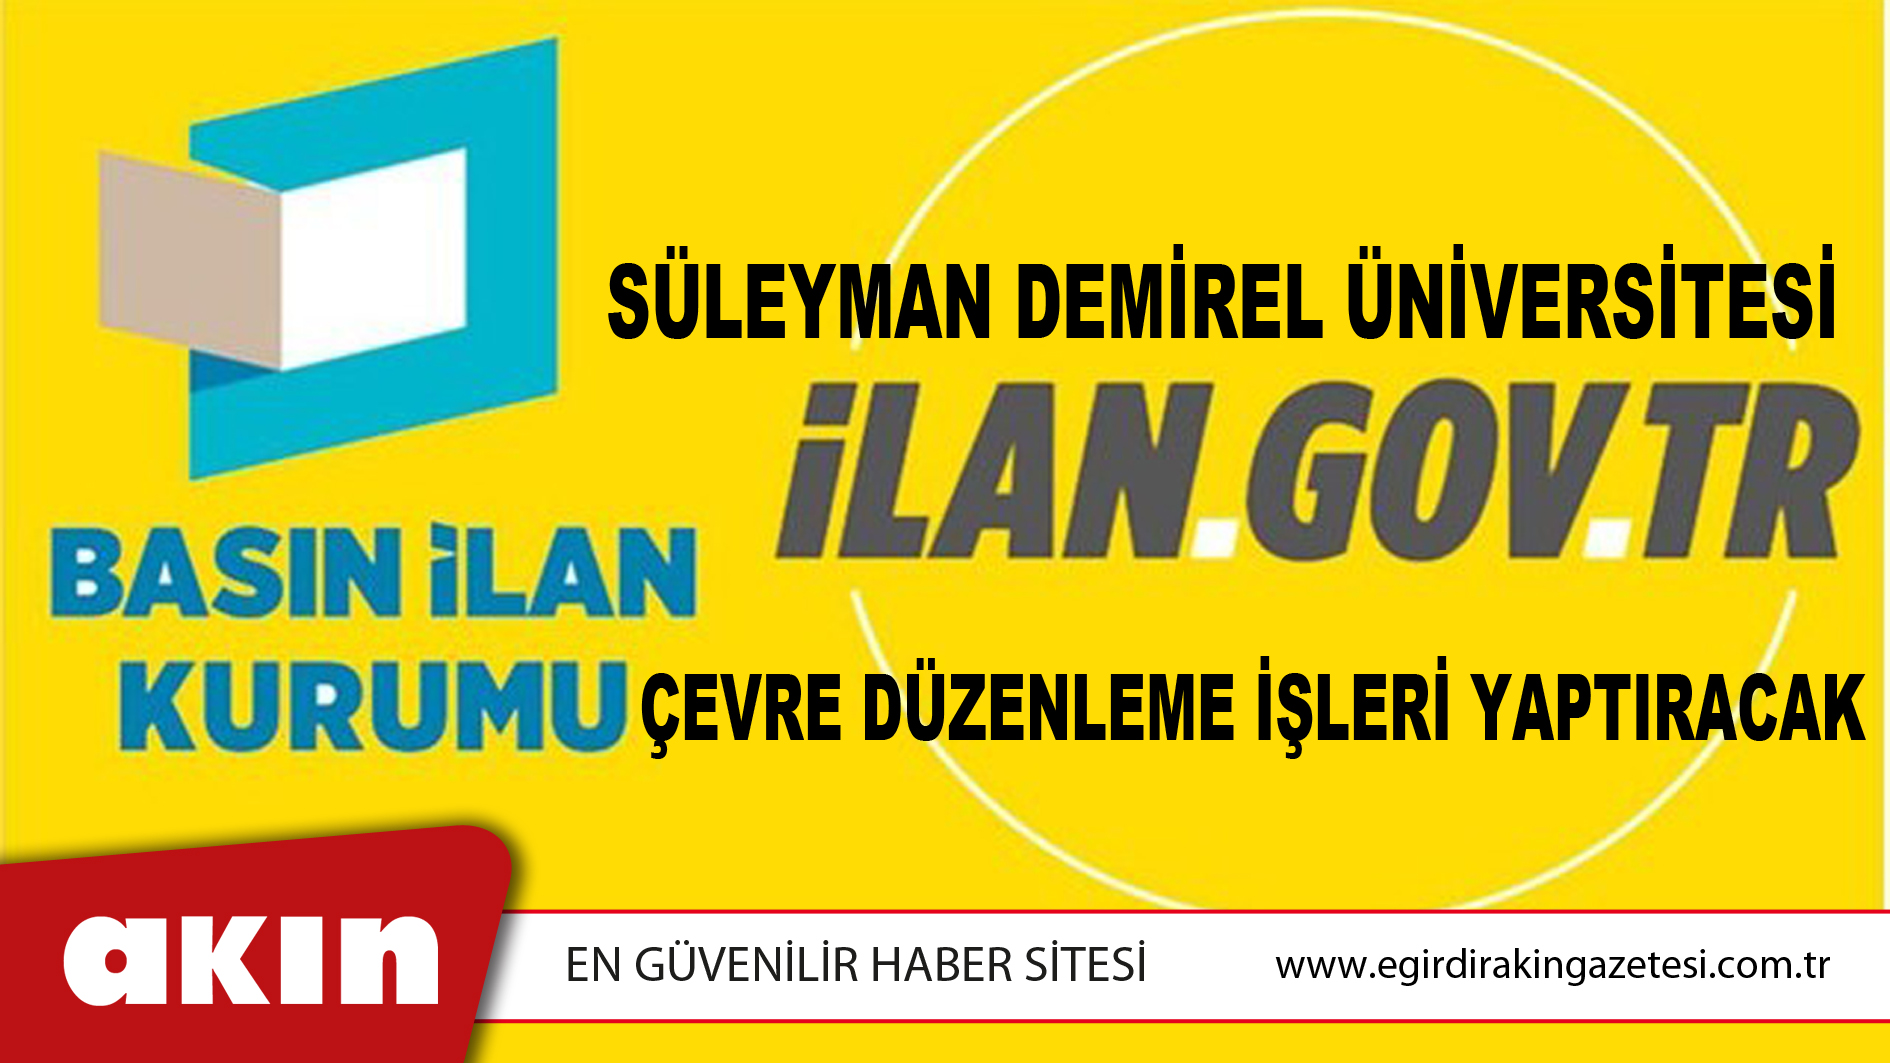 Süleyman Demirel Üniversitesi Çevre Düzenleme İşleri Yaptıracak